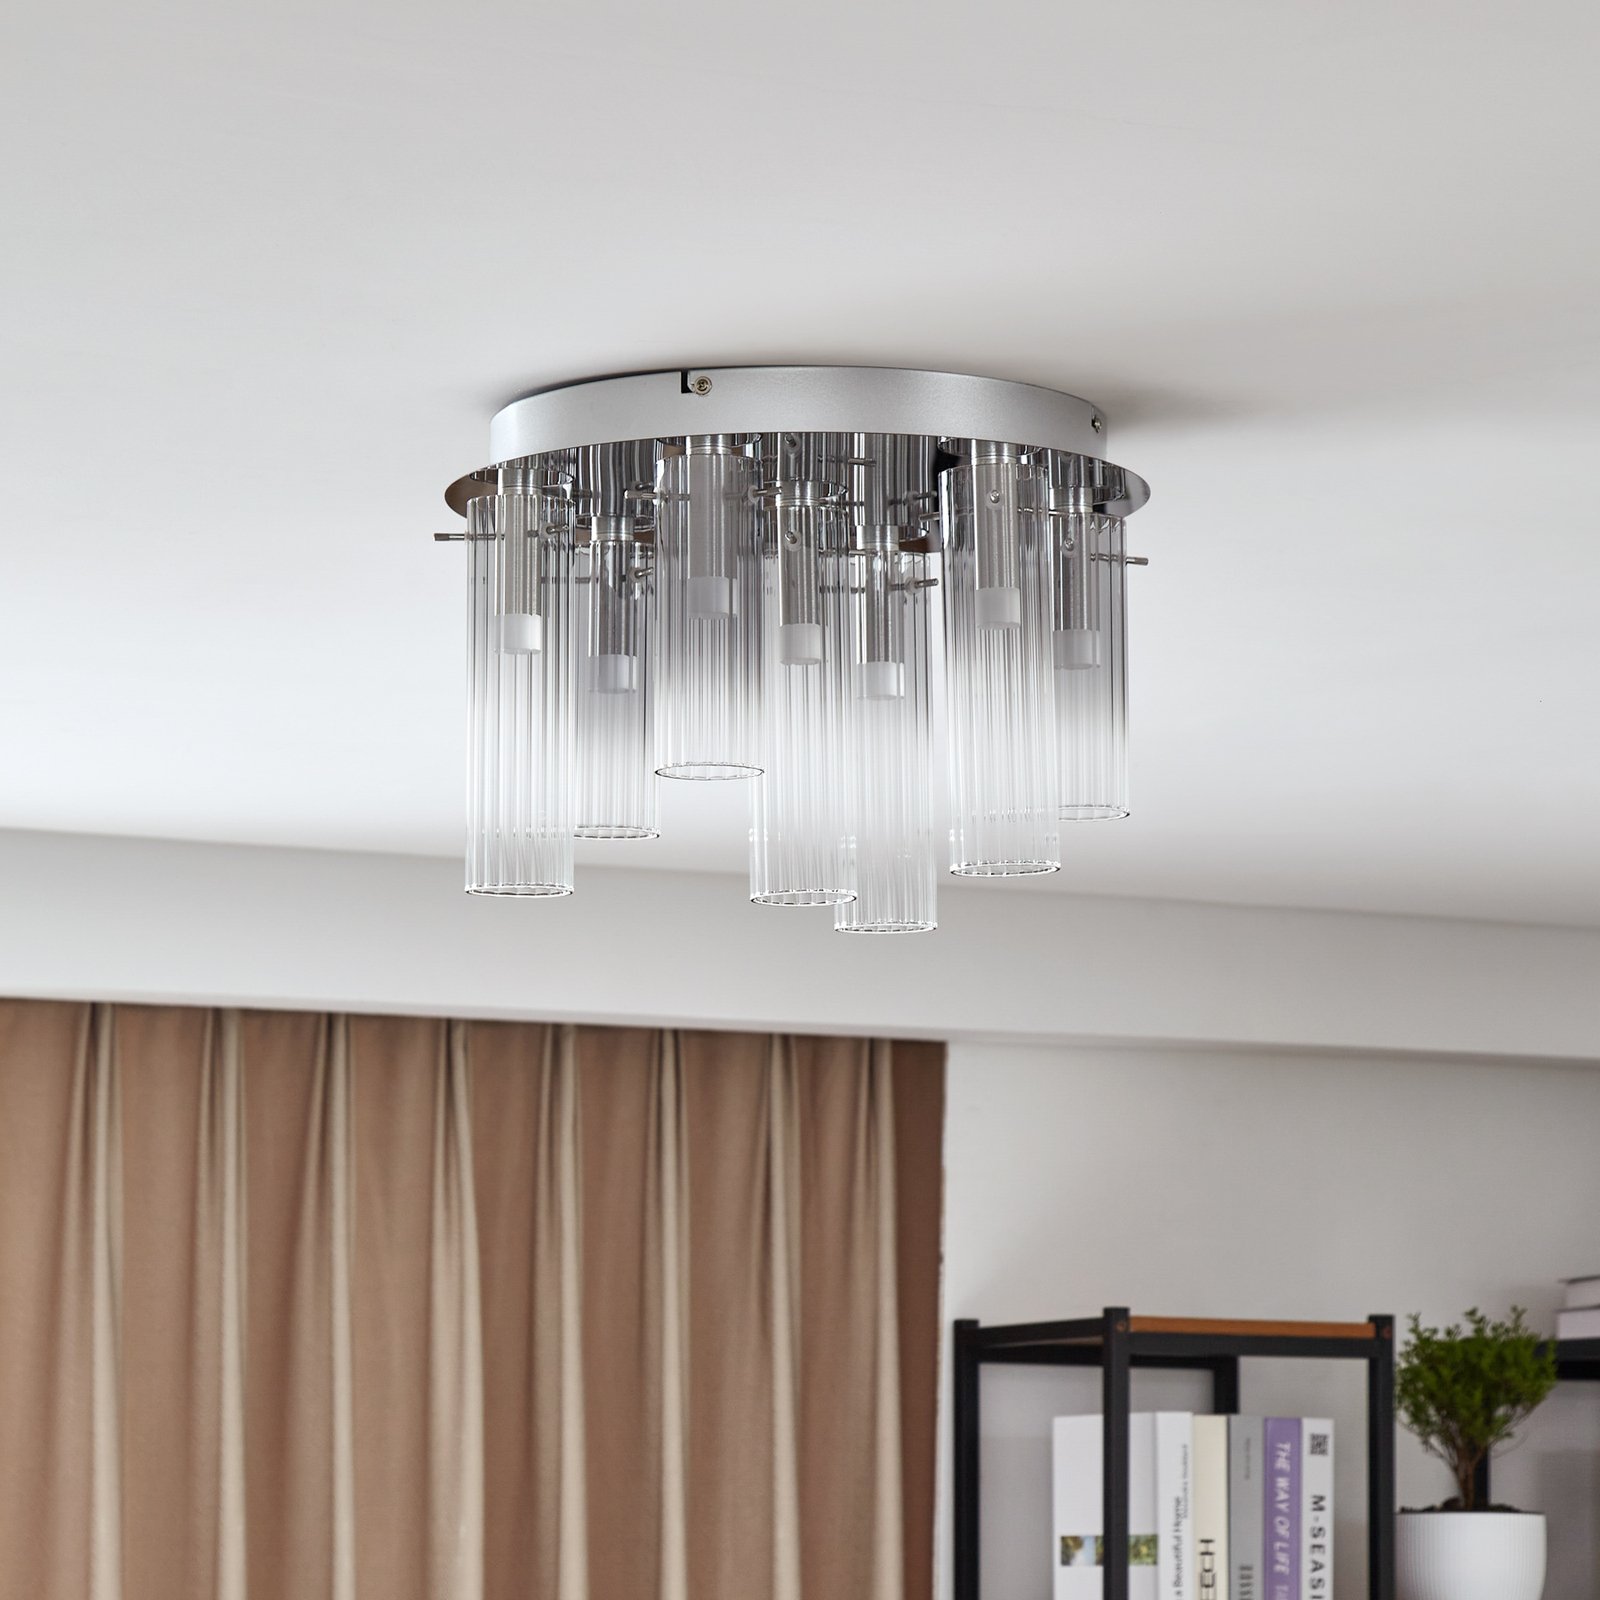 Lucande LED ceiling light Korvitha, 7-bulb, grey, glass